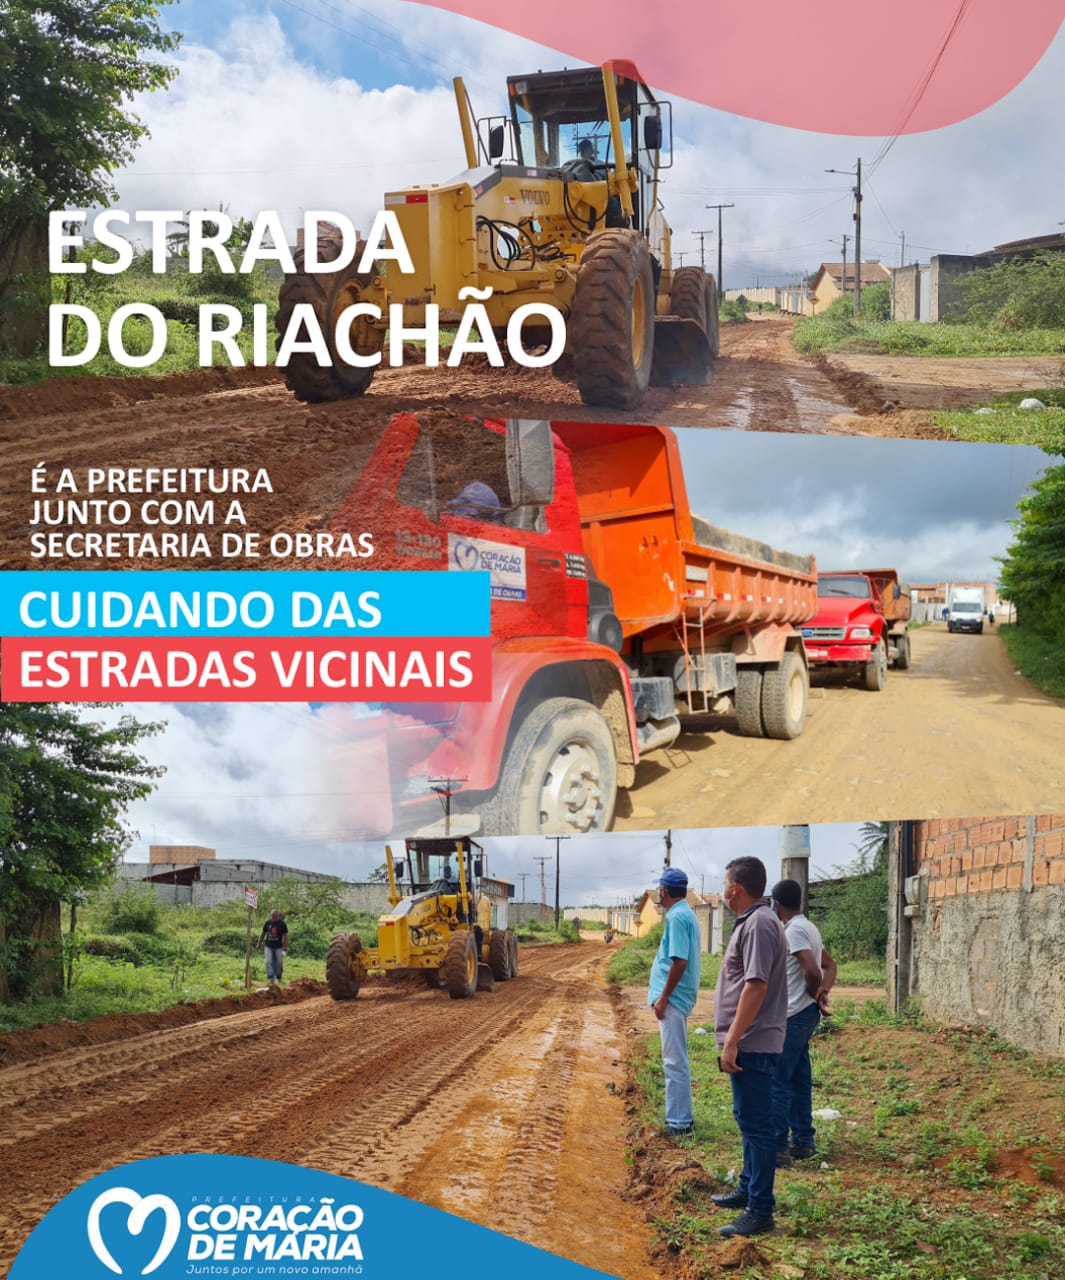 Recuperação das Estradas Vicinais do Riachão.